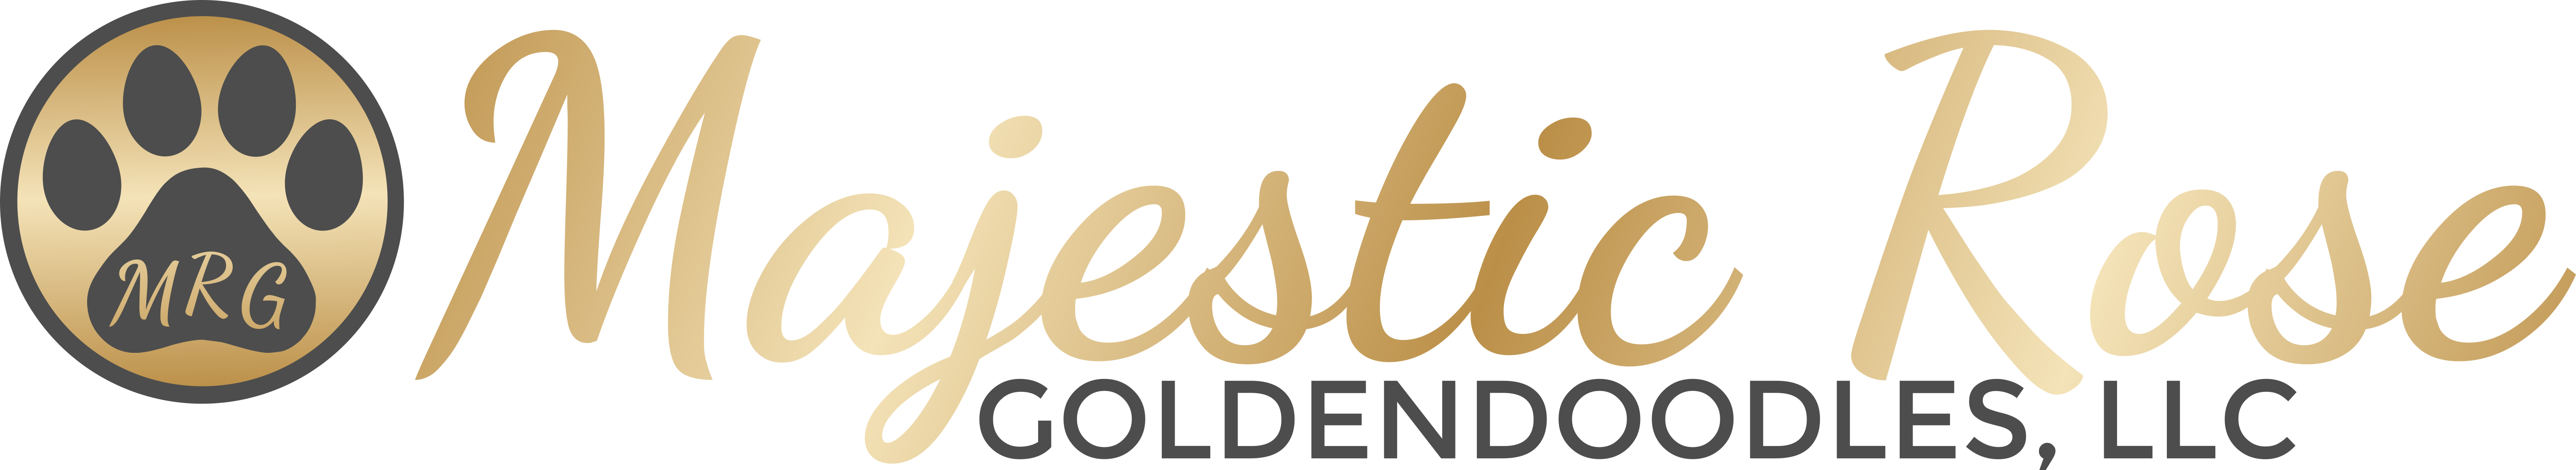 Majestic Rose Goldendoodles, LLC